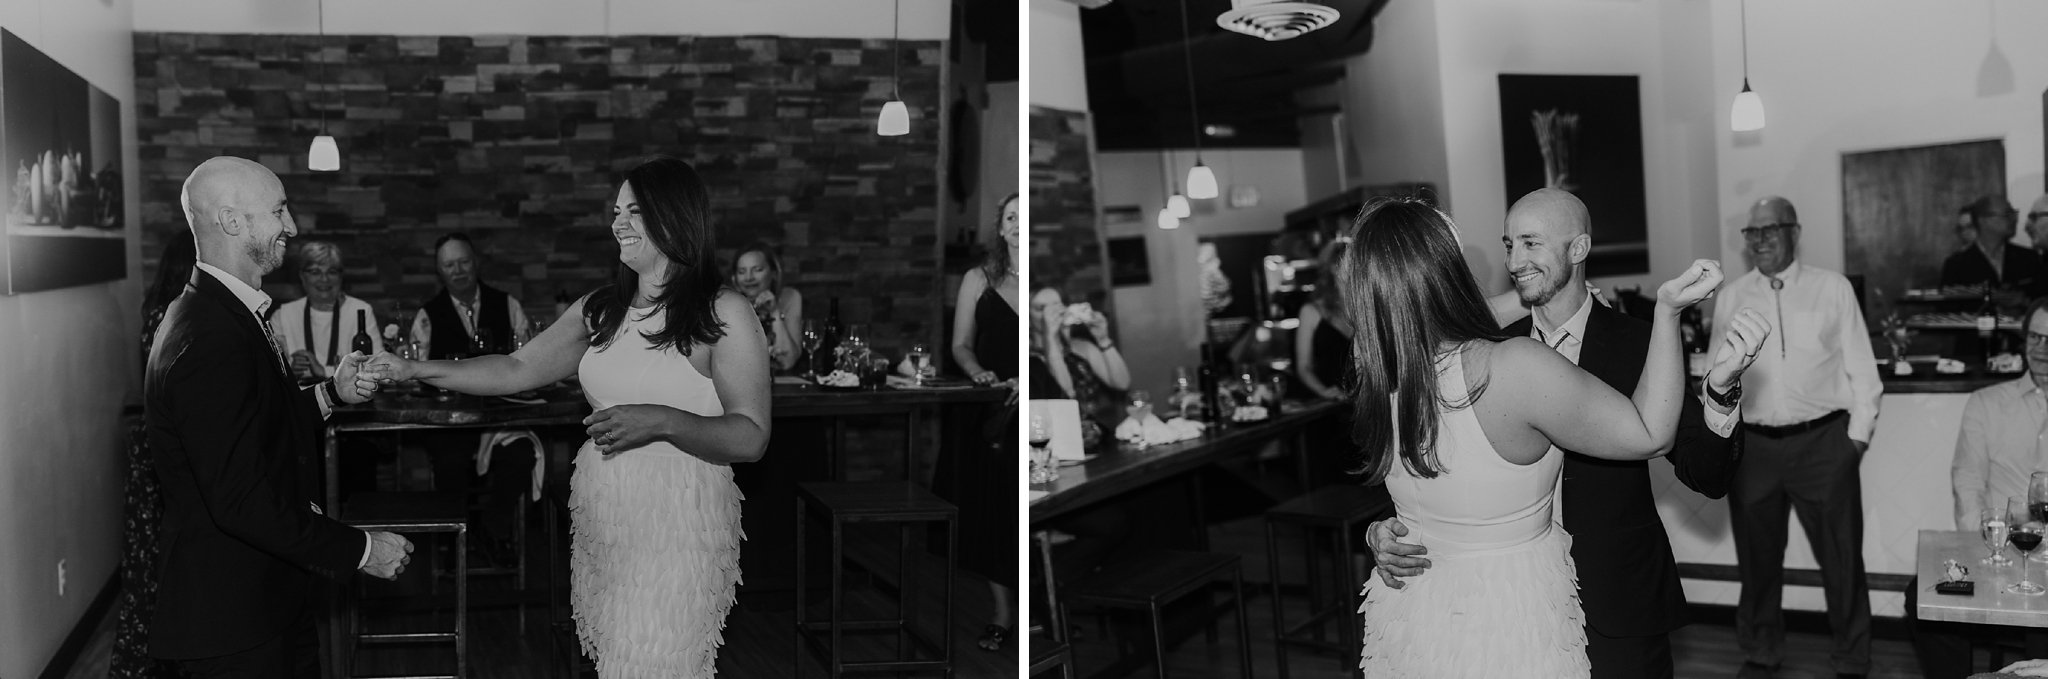 Alicia+lucia+photography+-+albuquerque+wedding+photographer+-+santa+fe+wedding+photography+-+new+mexico+wedding+photographer+-+new+mexico+wedding+-+new+mexico+wedding+-+ghost+ranch+wedding+-+santa+fe+wedding+-+southwest+wedding_0141.jpg